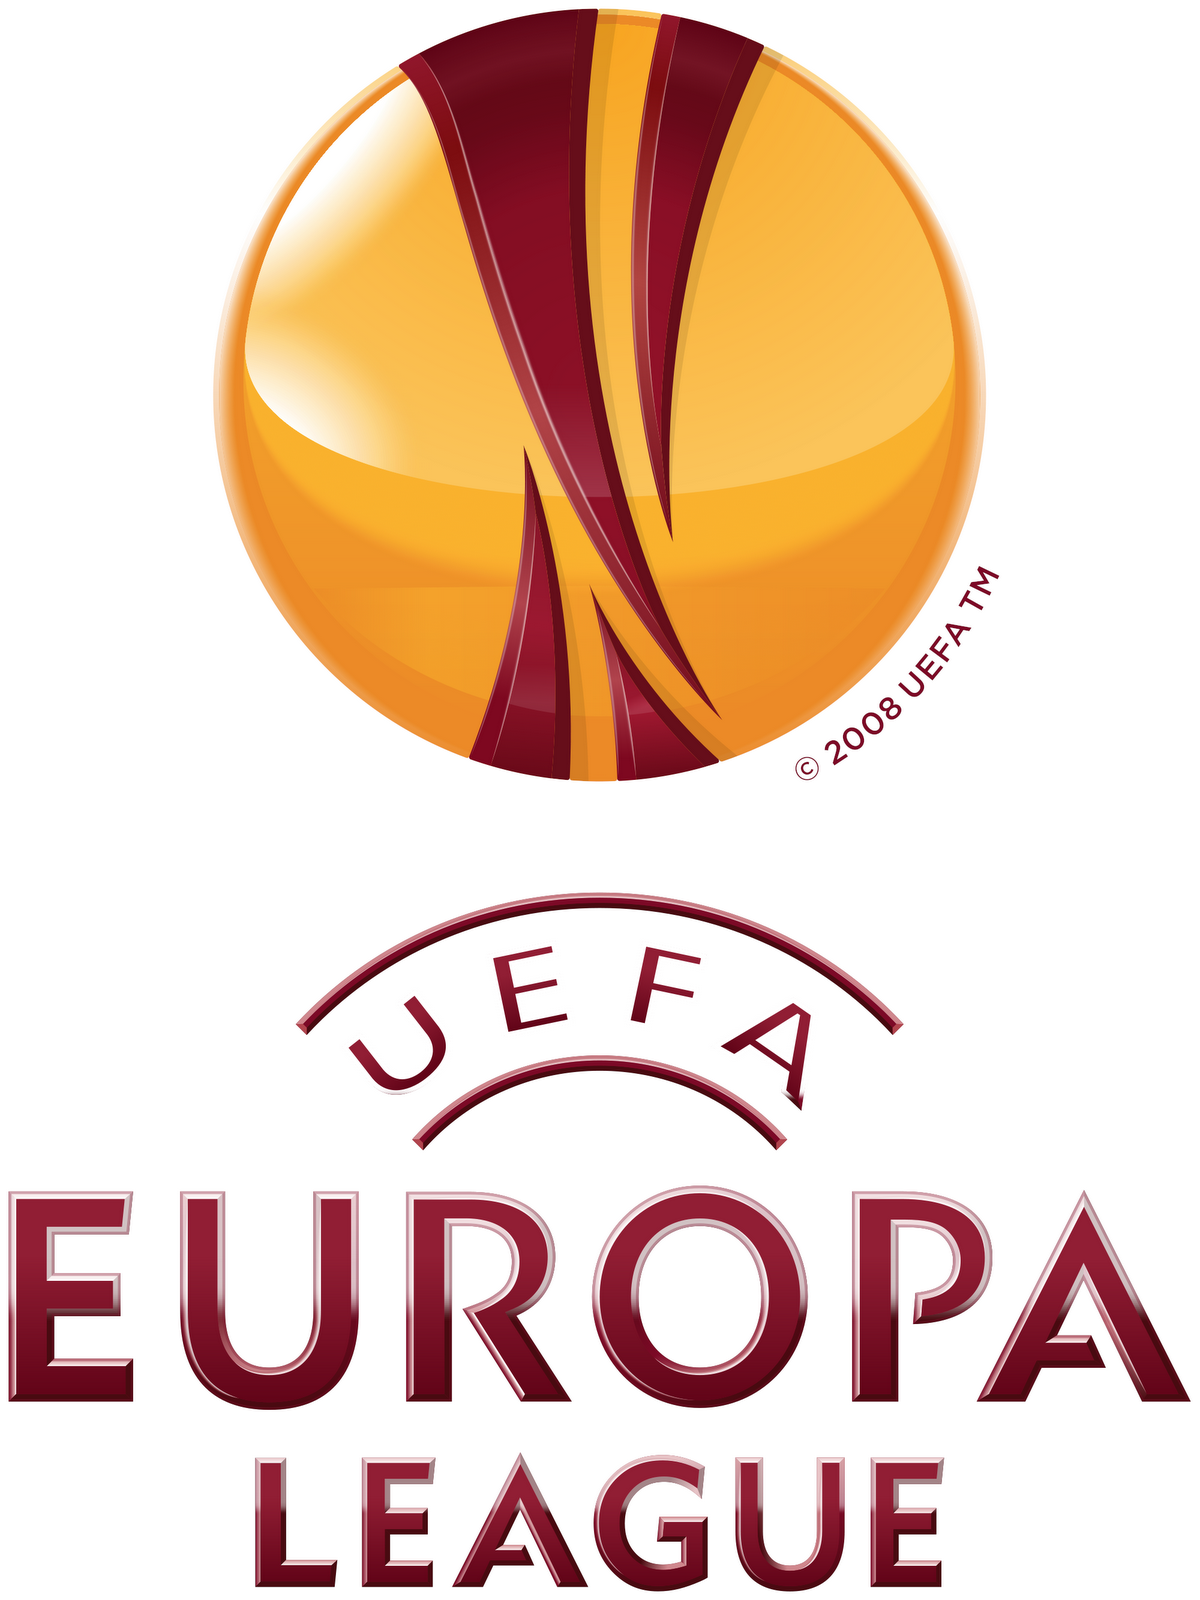 Resultado de imagen para europa league logo